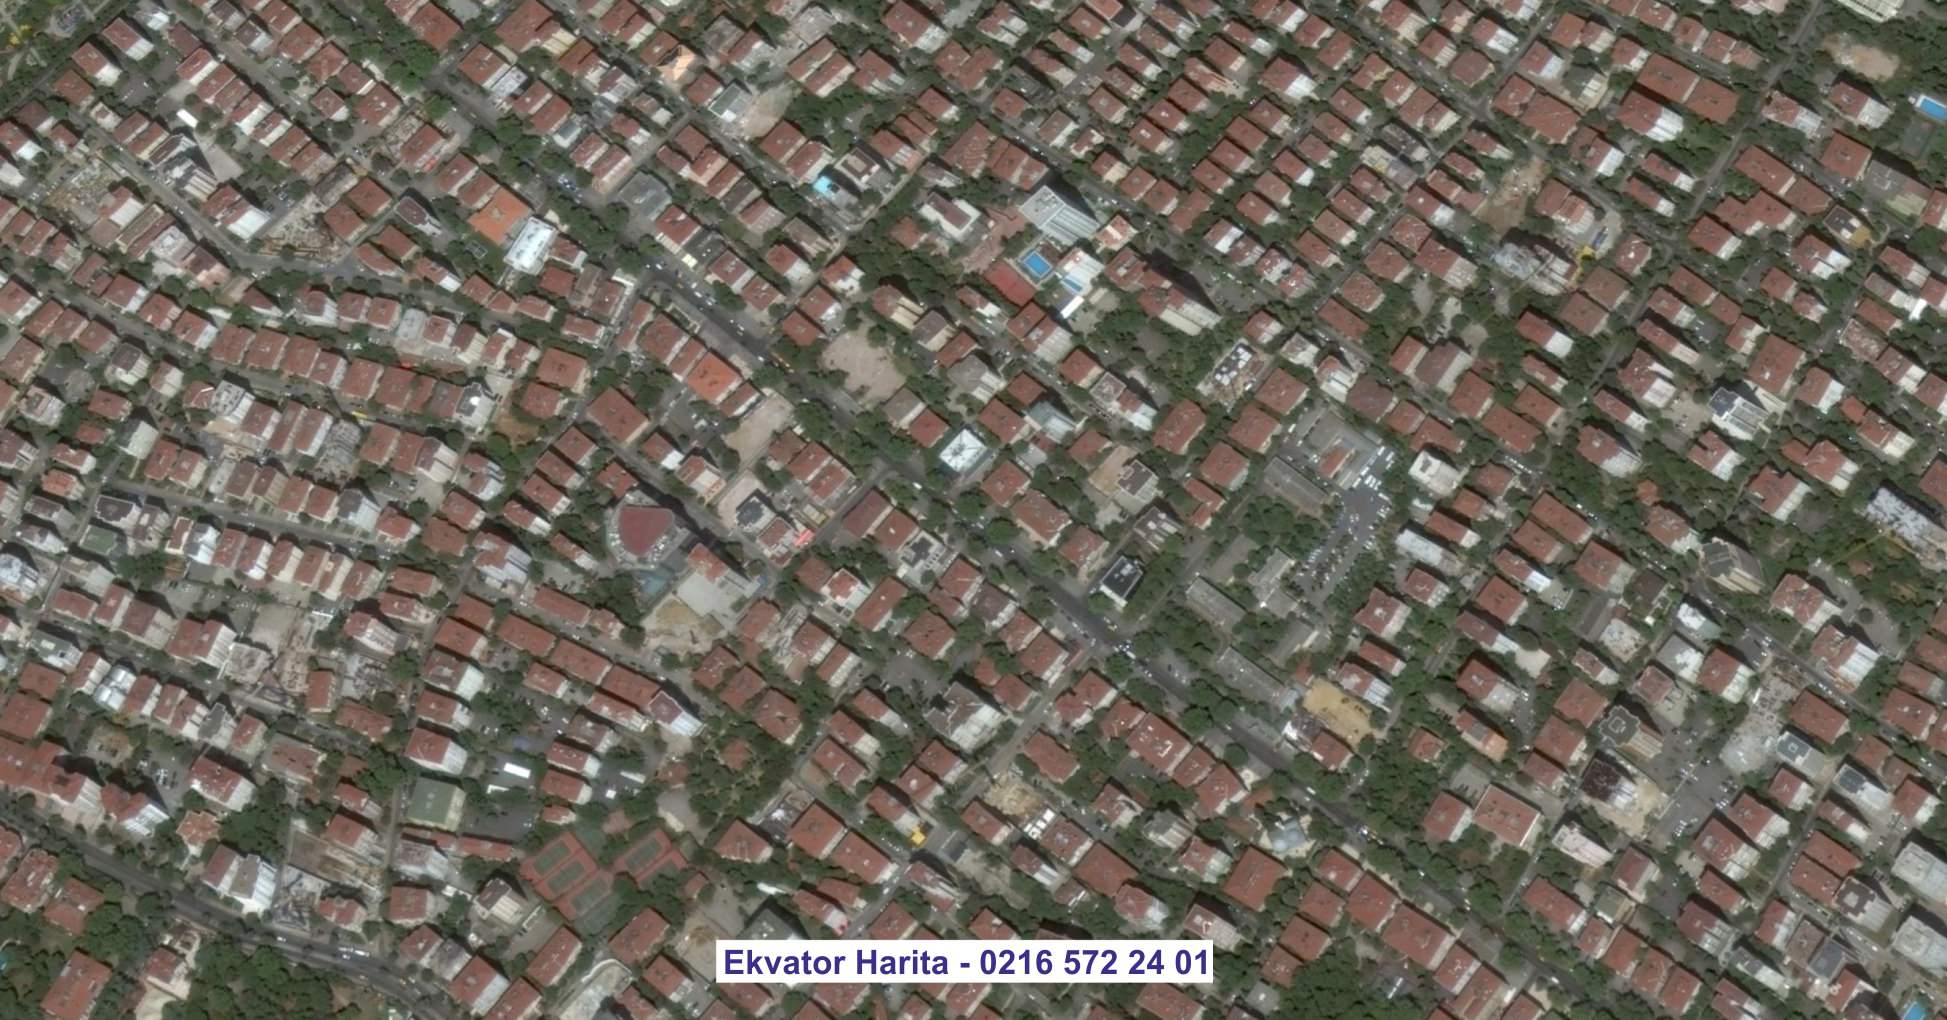 Altındağ Uydu Görüntüsü Örnek Fotoğrafı